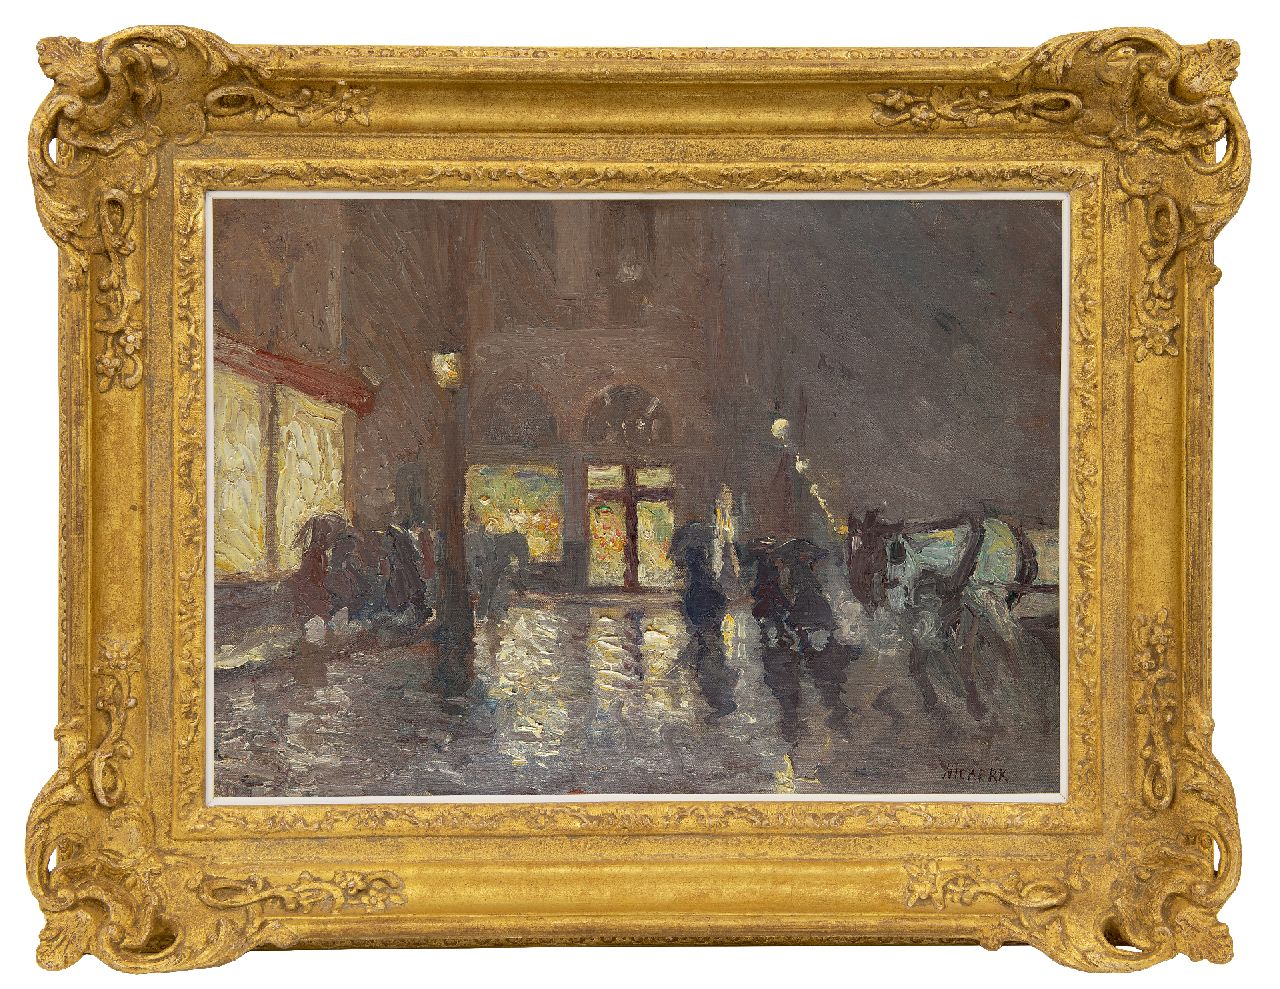 Niekerk M.J.  | 'Maurits' Joseph Niekerk | Schilderijen te koop aangeboden | Avond in Brussel, olieverf op doek 39,2 x 55,4 cm, gesigneerd rechtsonder